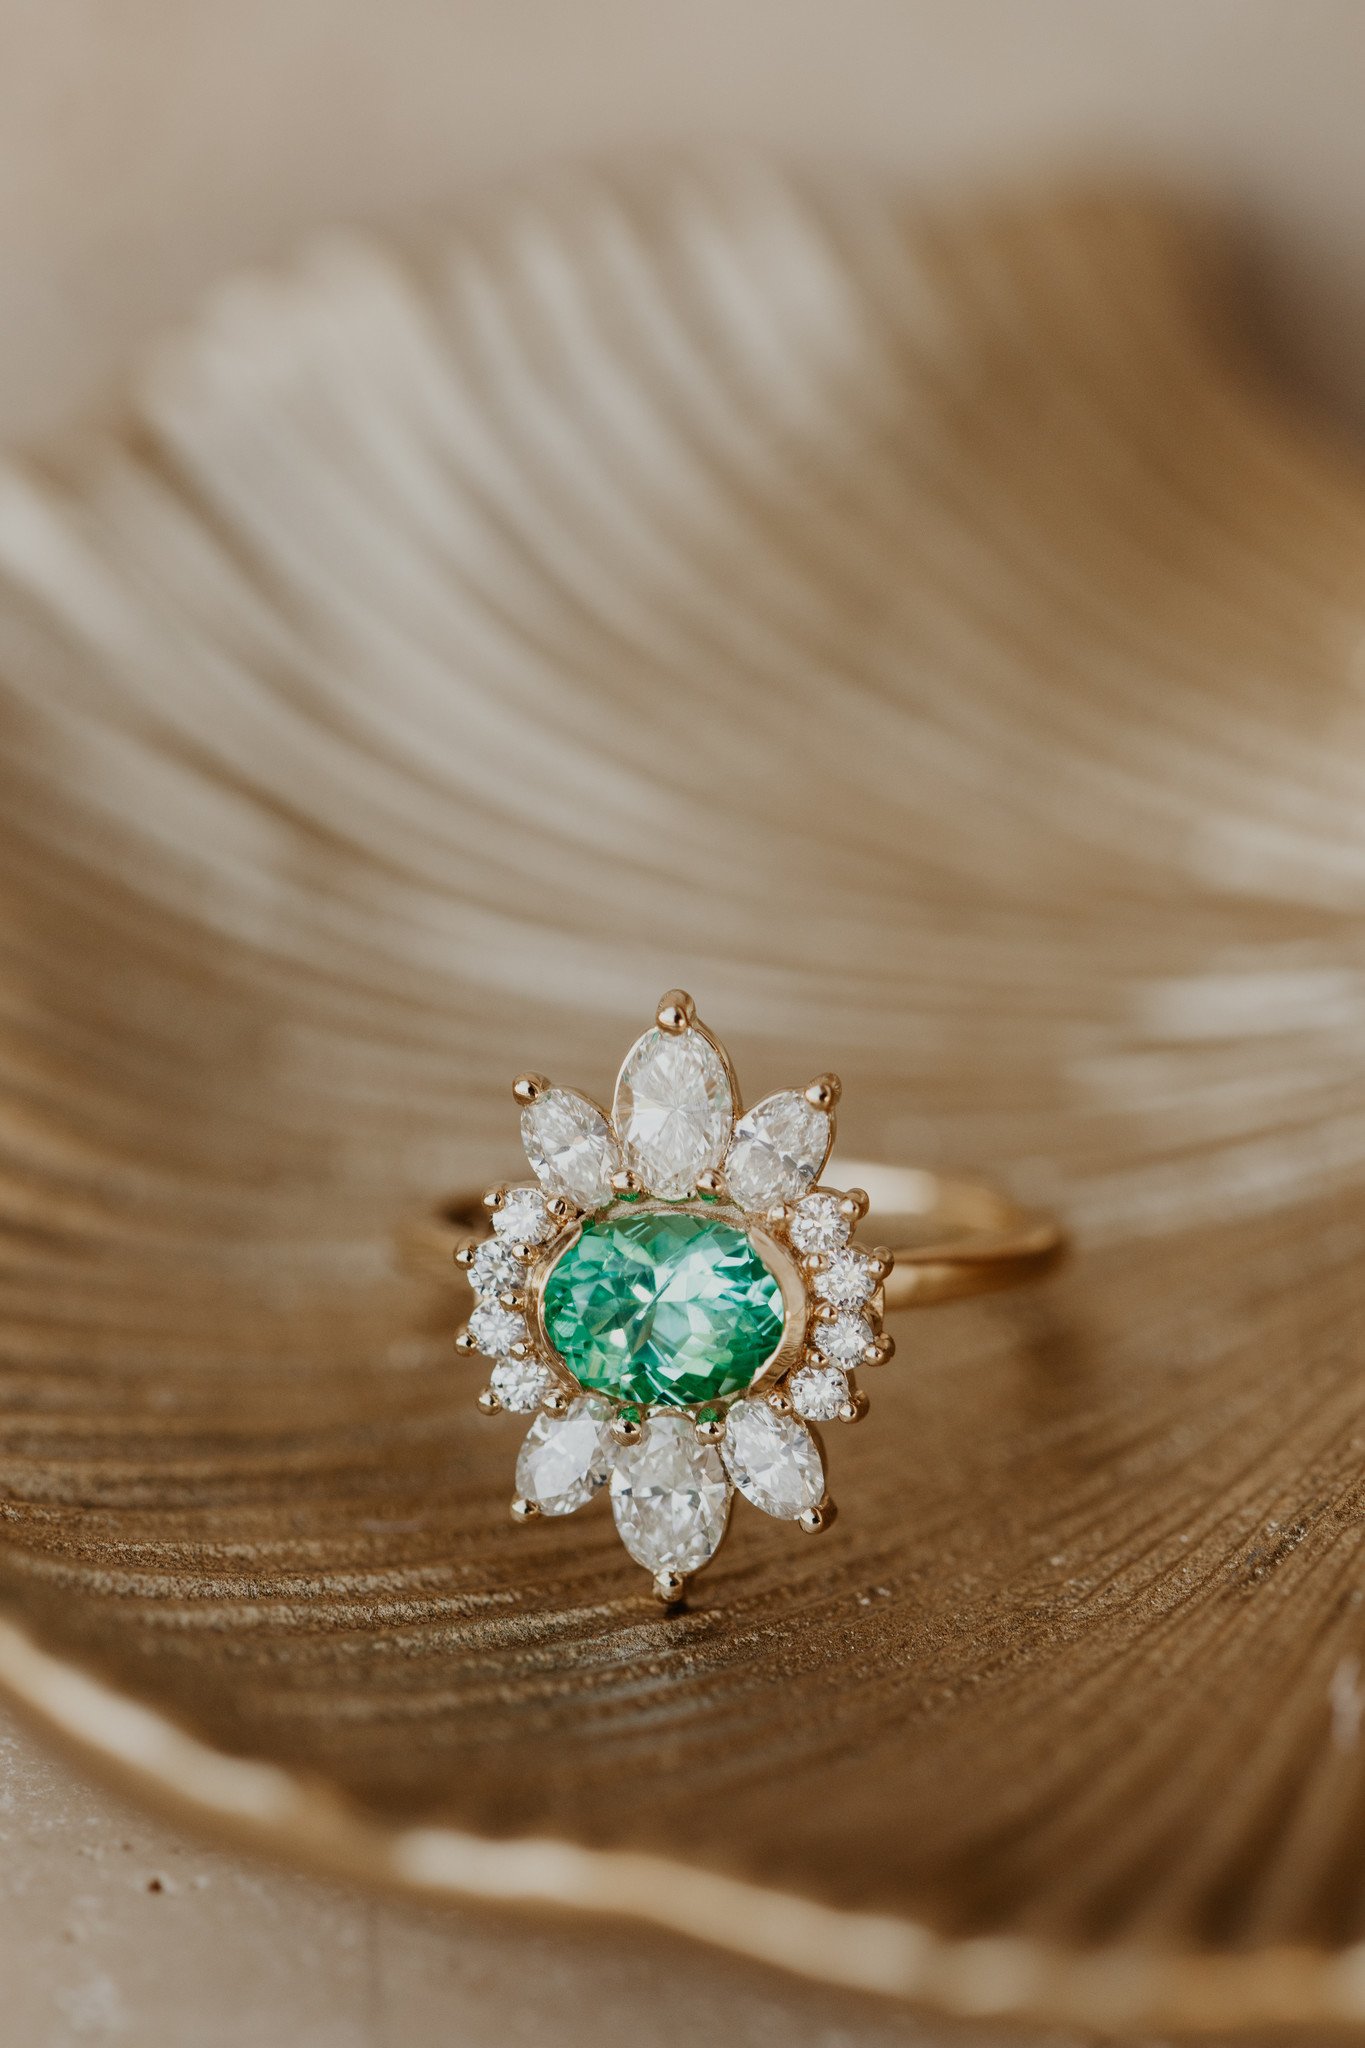 Buy Oval Emerald Ring Online | H.k.s Jewellers - JewelFlix